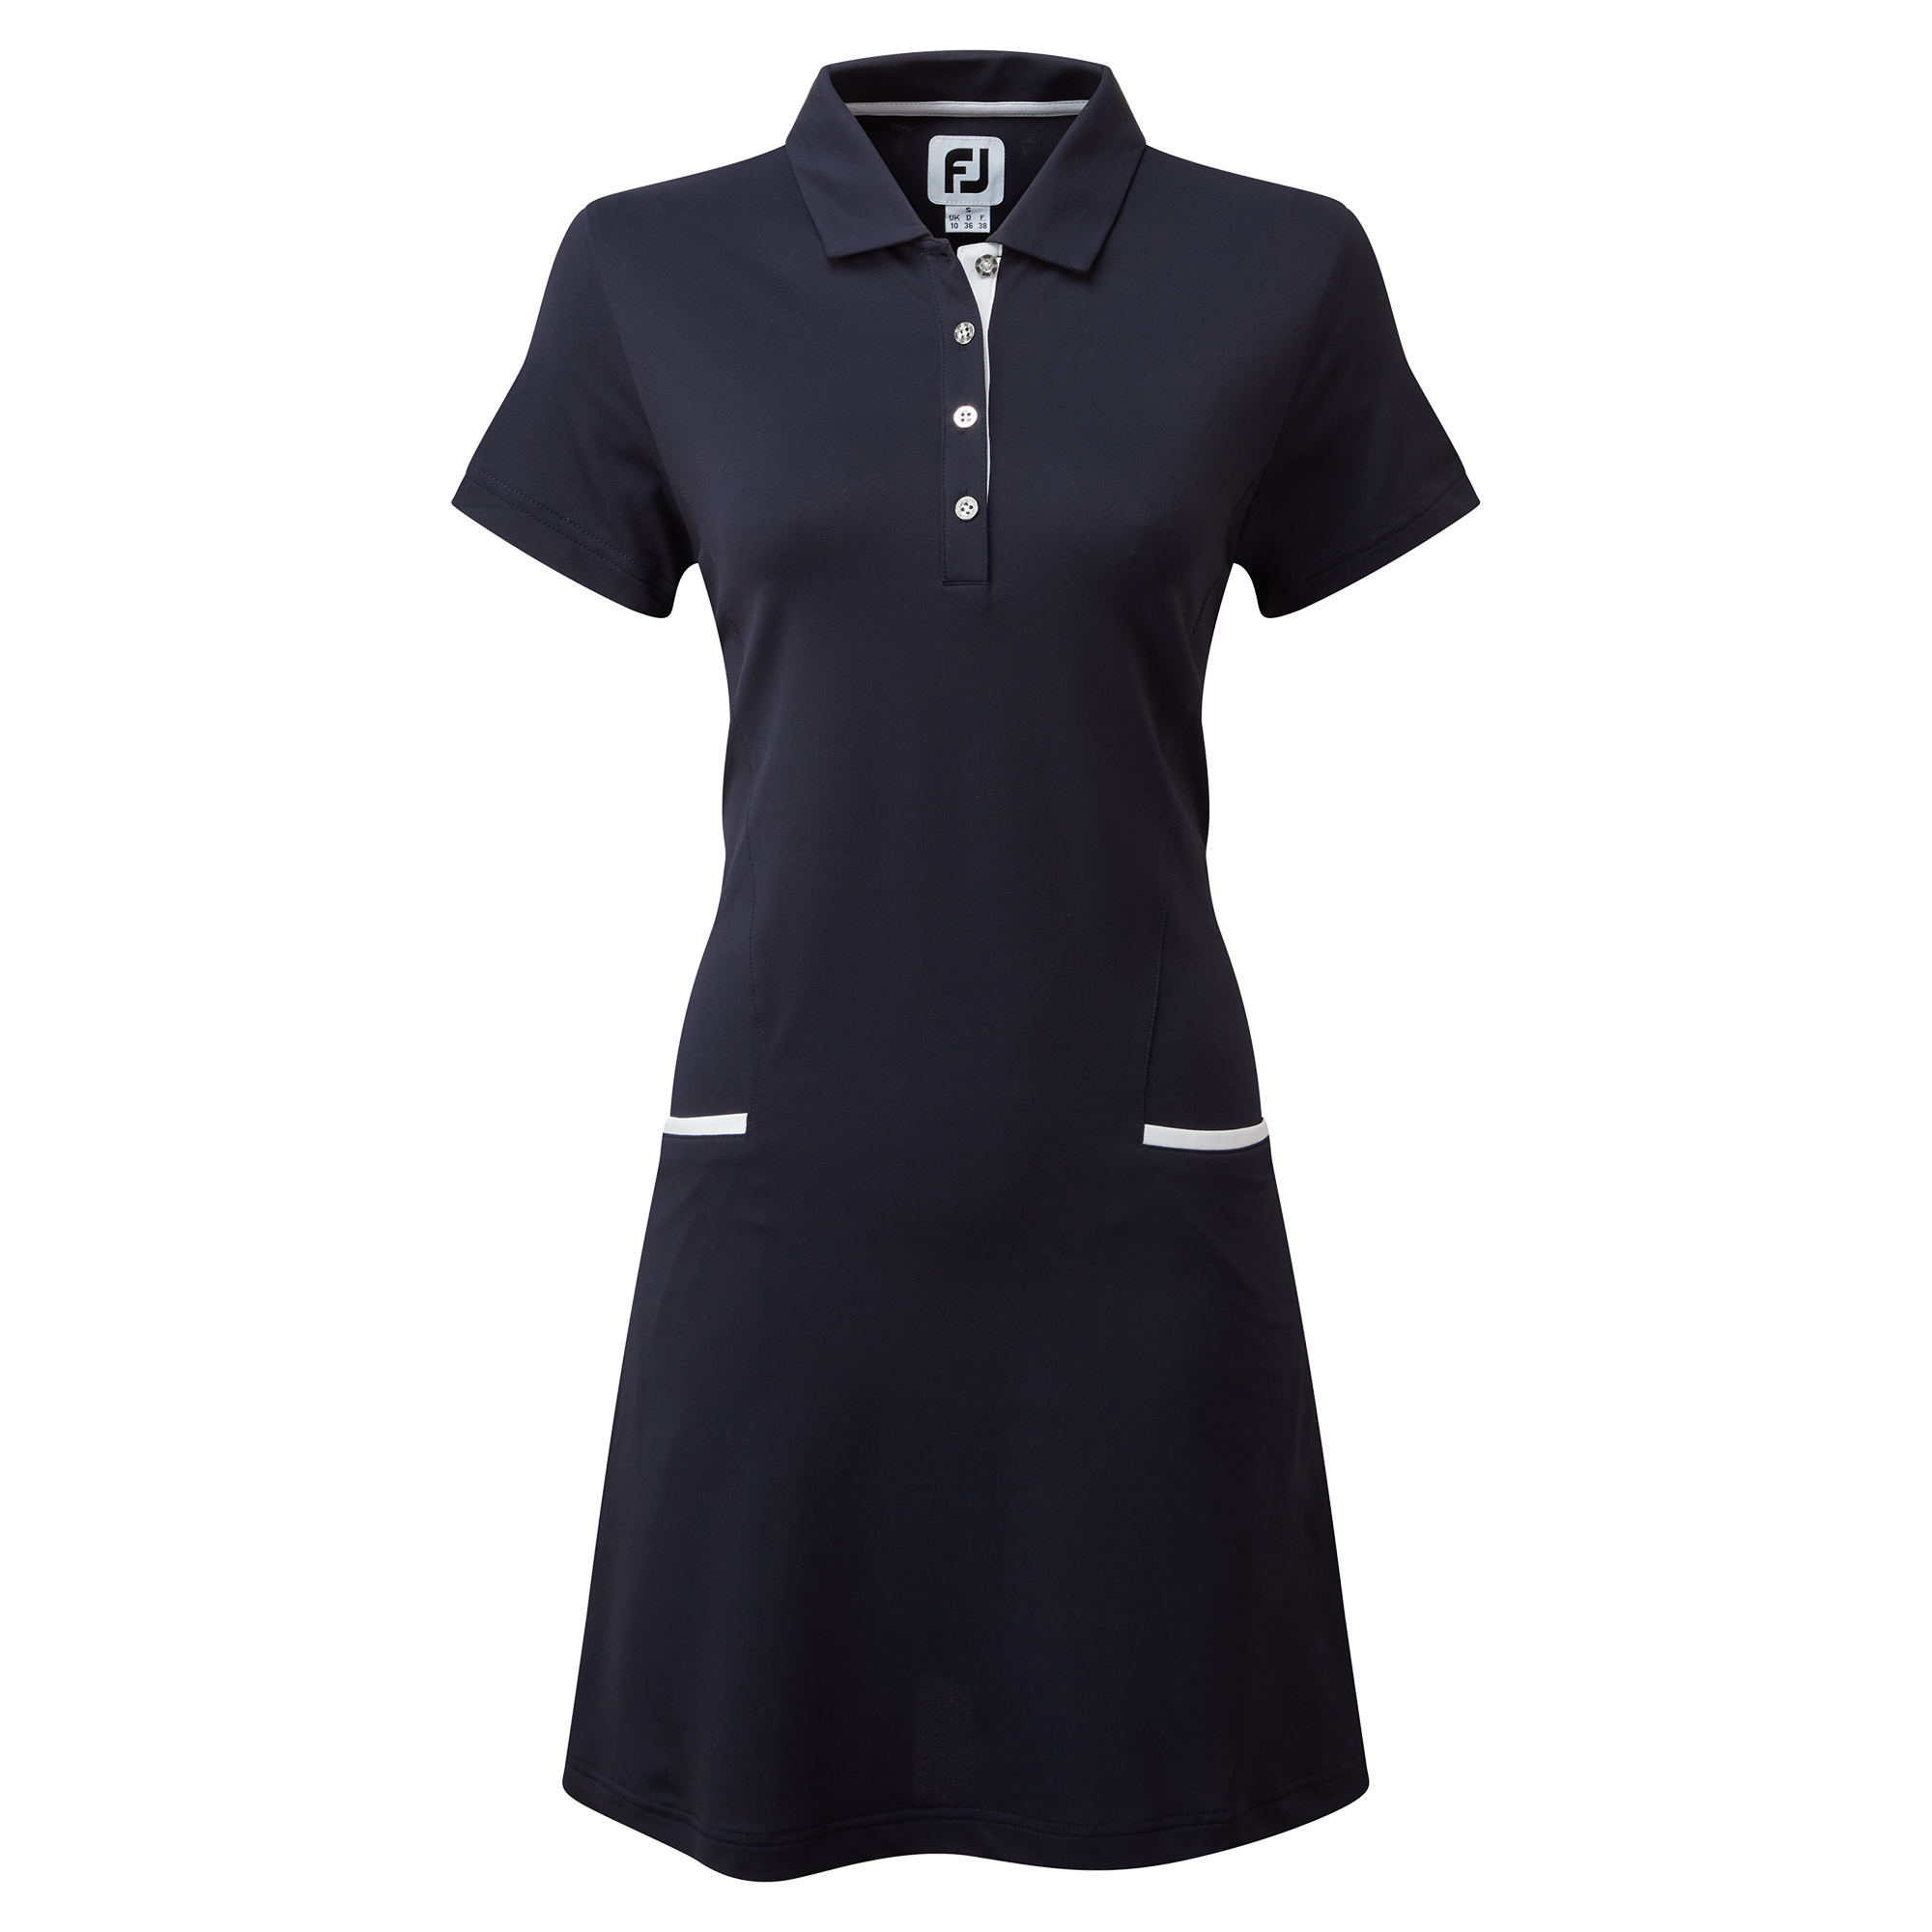 Footjoy dámské golfové šaty, tmavě modré, vel. M